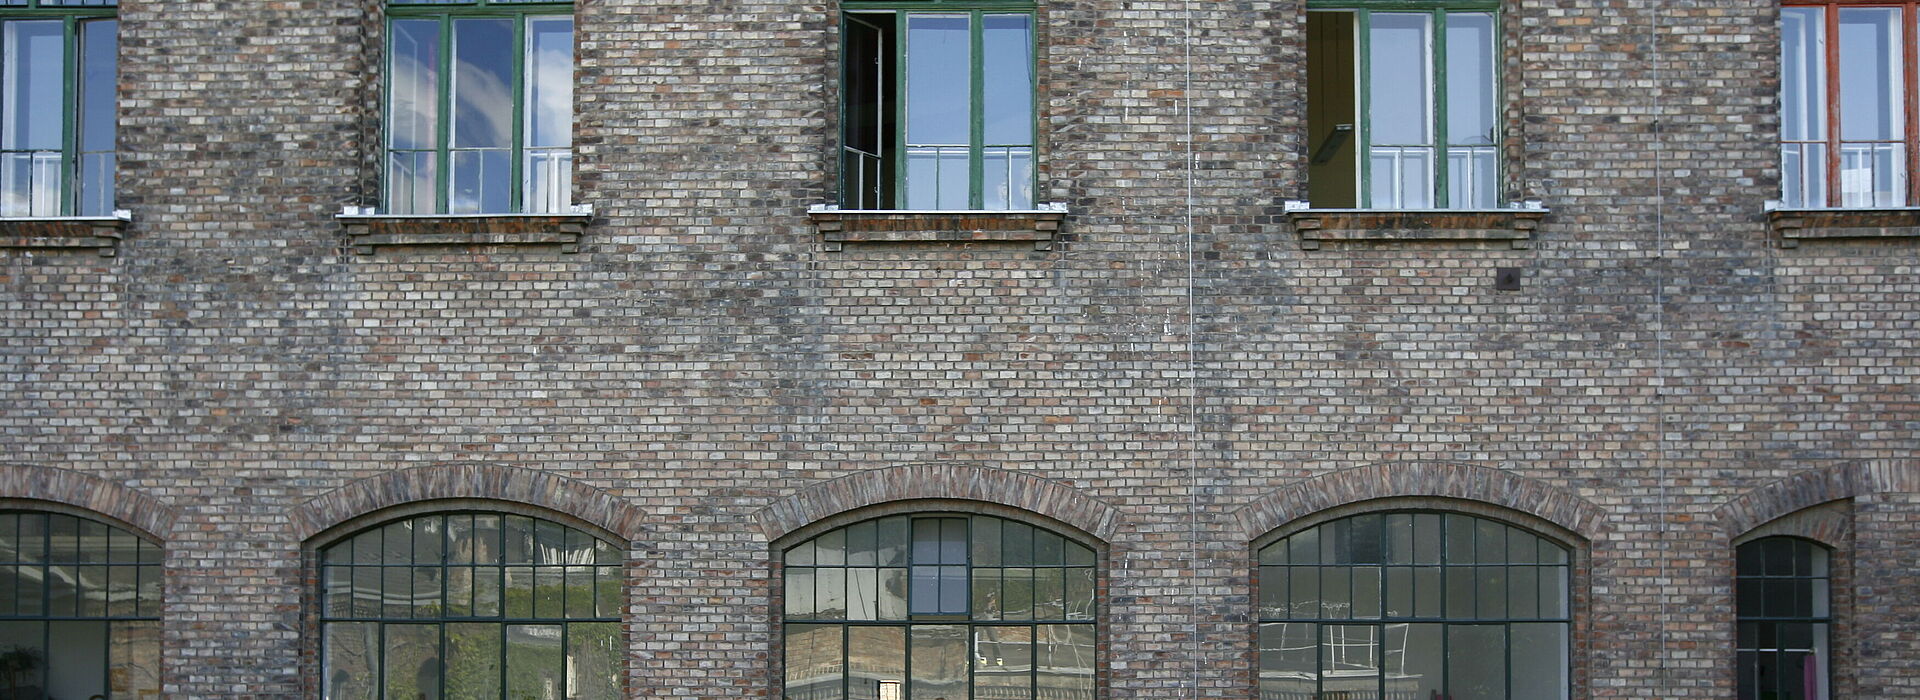 WUK Fassade Ziegelbau mit Fenstern.